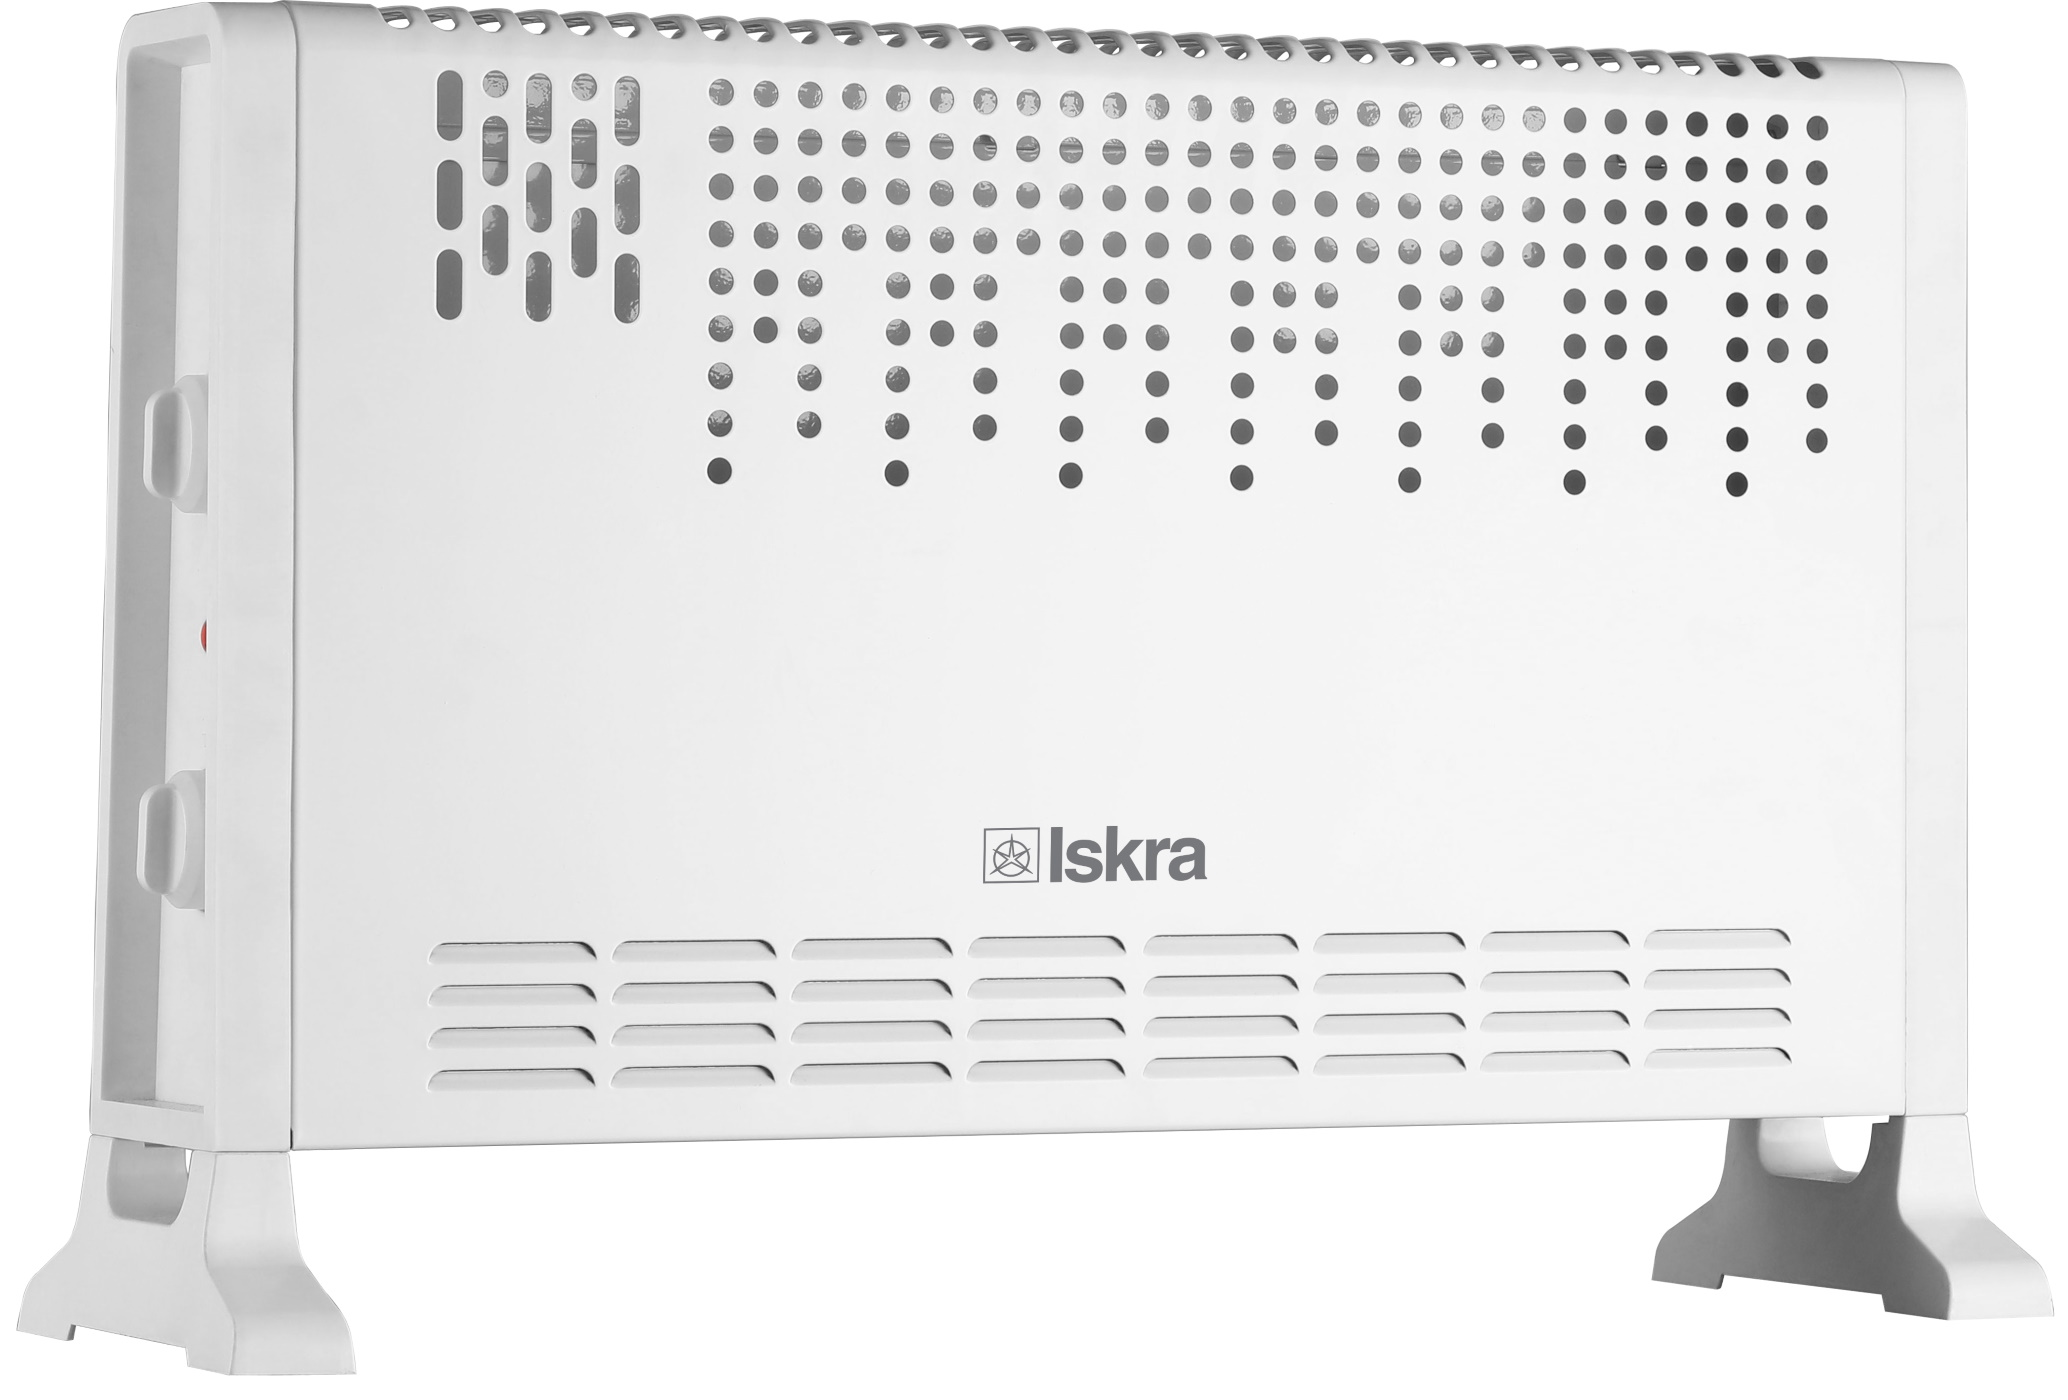 ISKRA Elektrisches Standheizgerät (2000 Konvektor Raumgröße: 25 m²) Watt